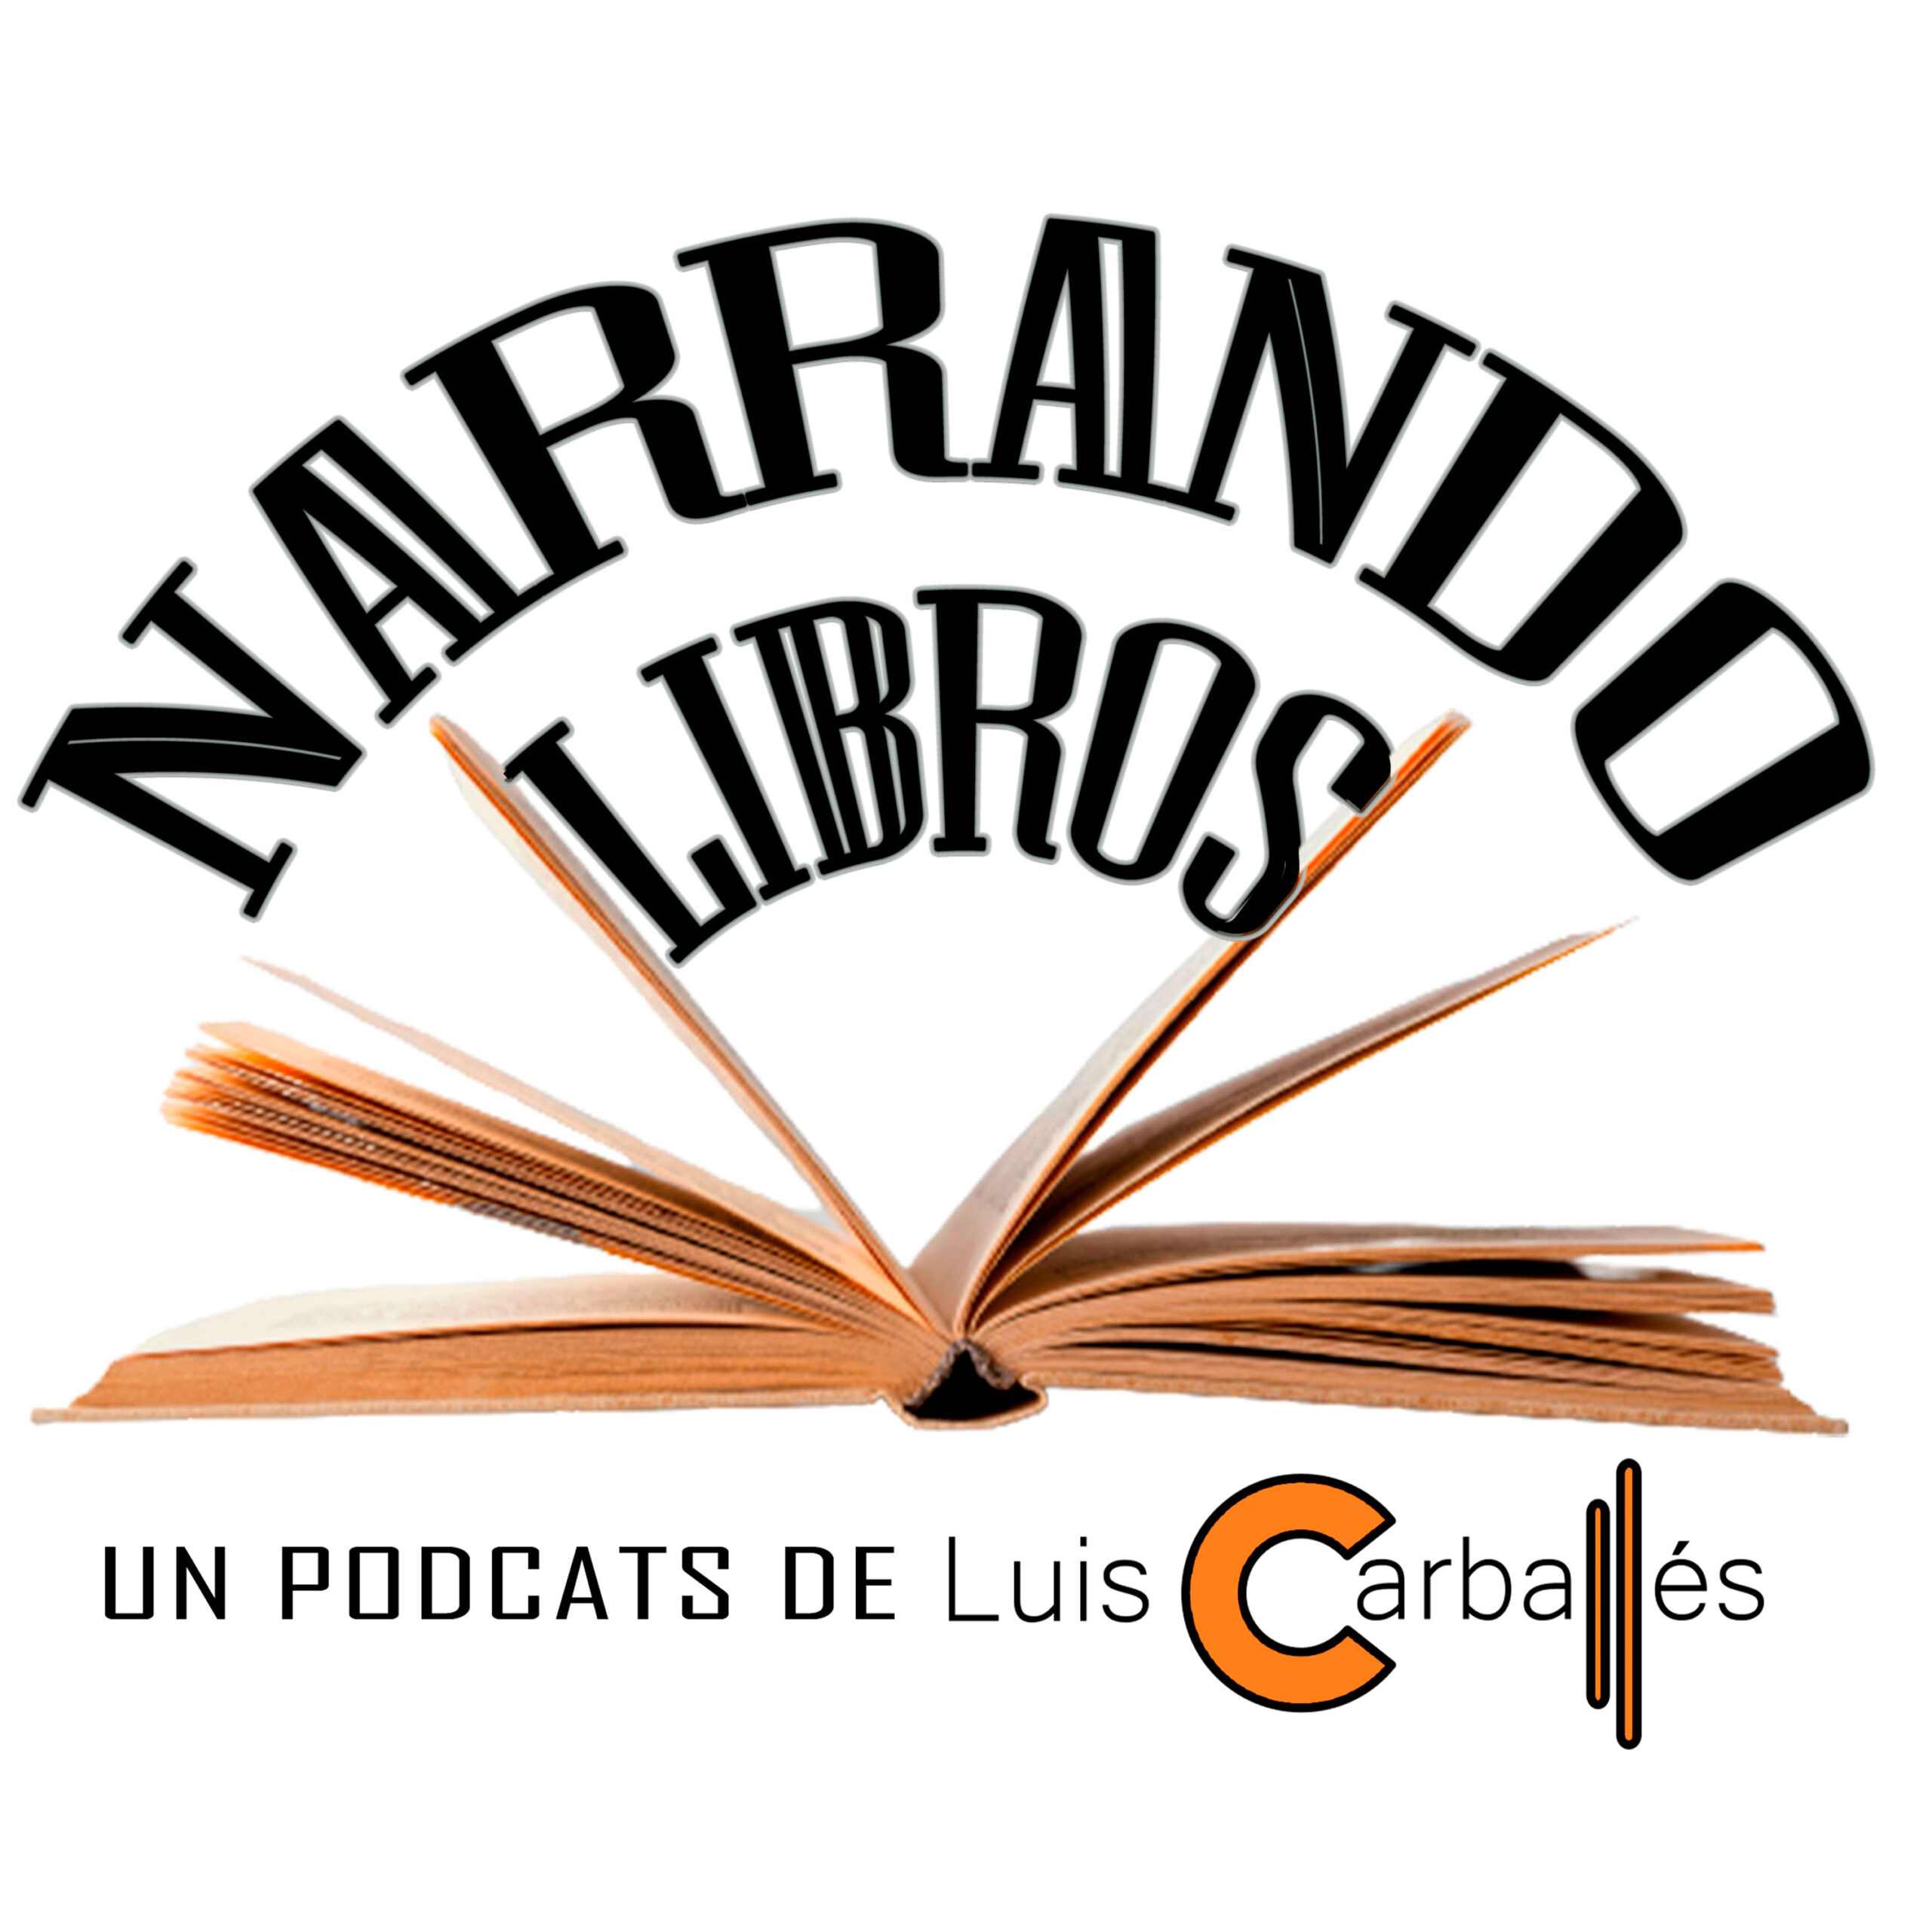 Narrando Libros - Un podcast de Luis Carballés